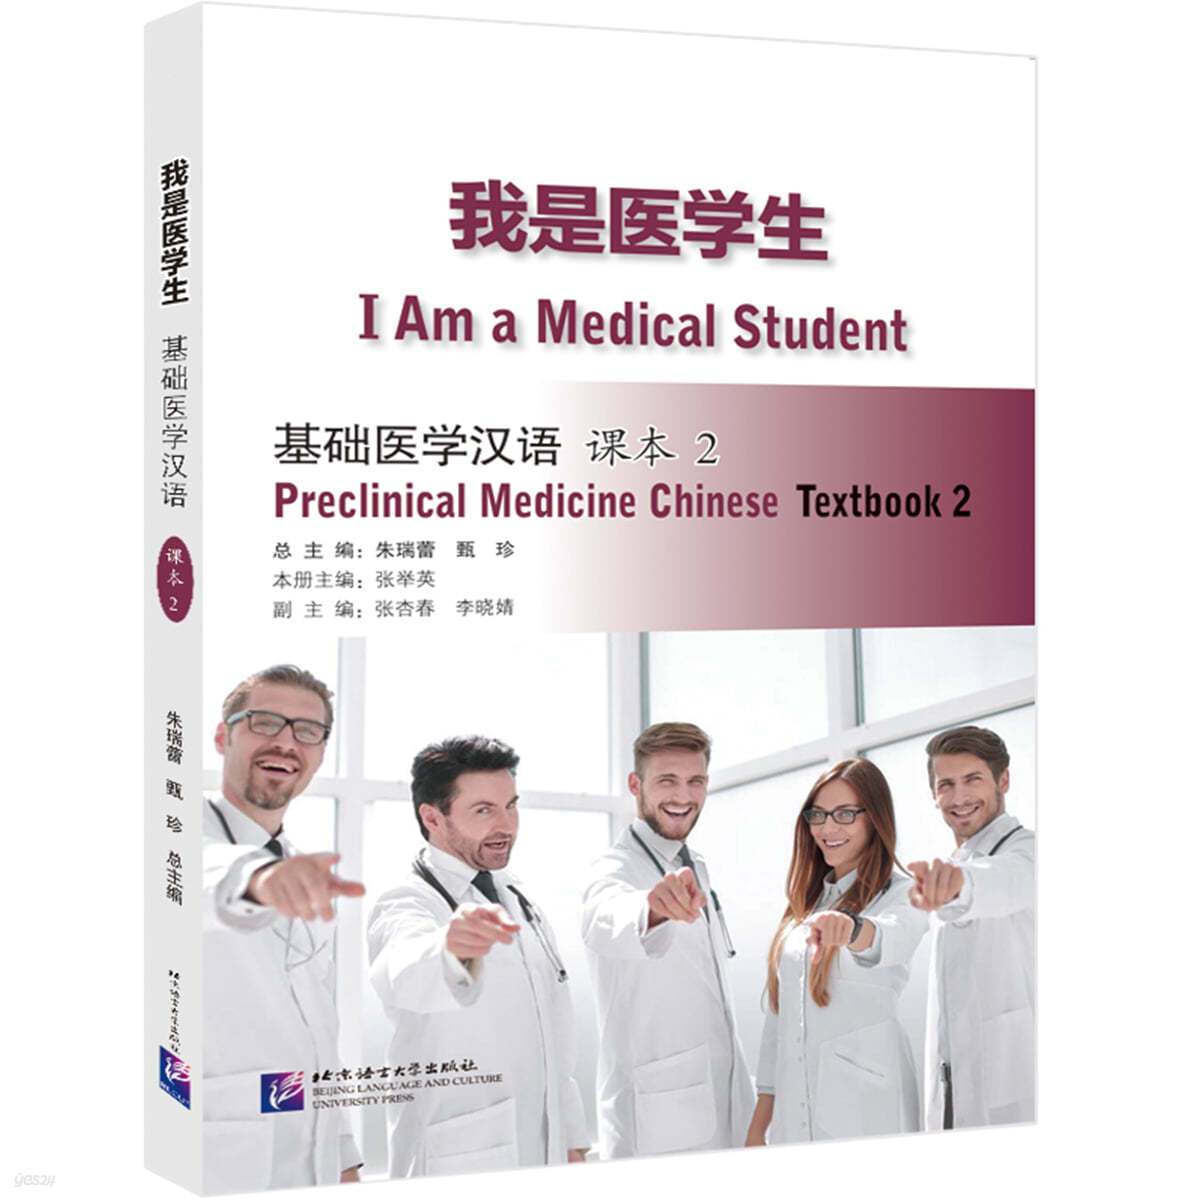 아시의학생 : 기초의학한어 과본 2 我是醫學生：基礎醫學漢語 課本2